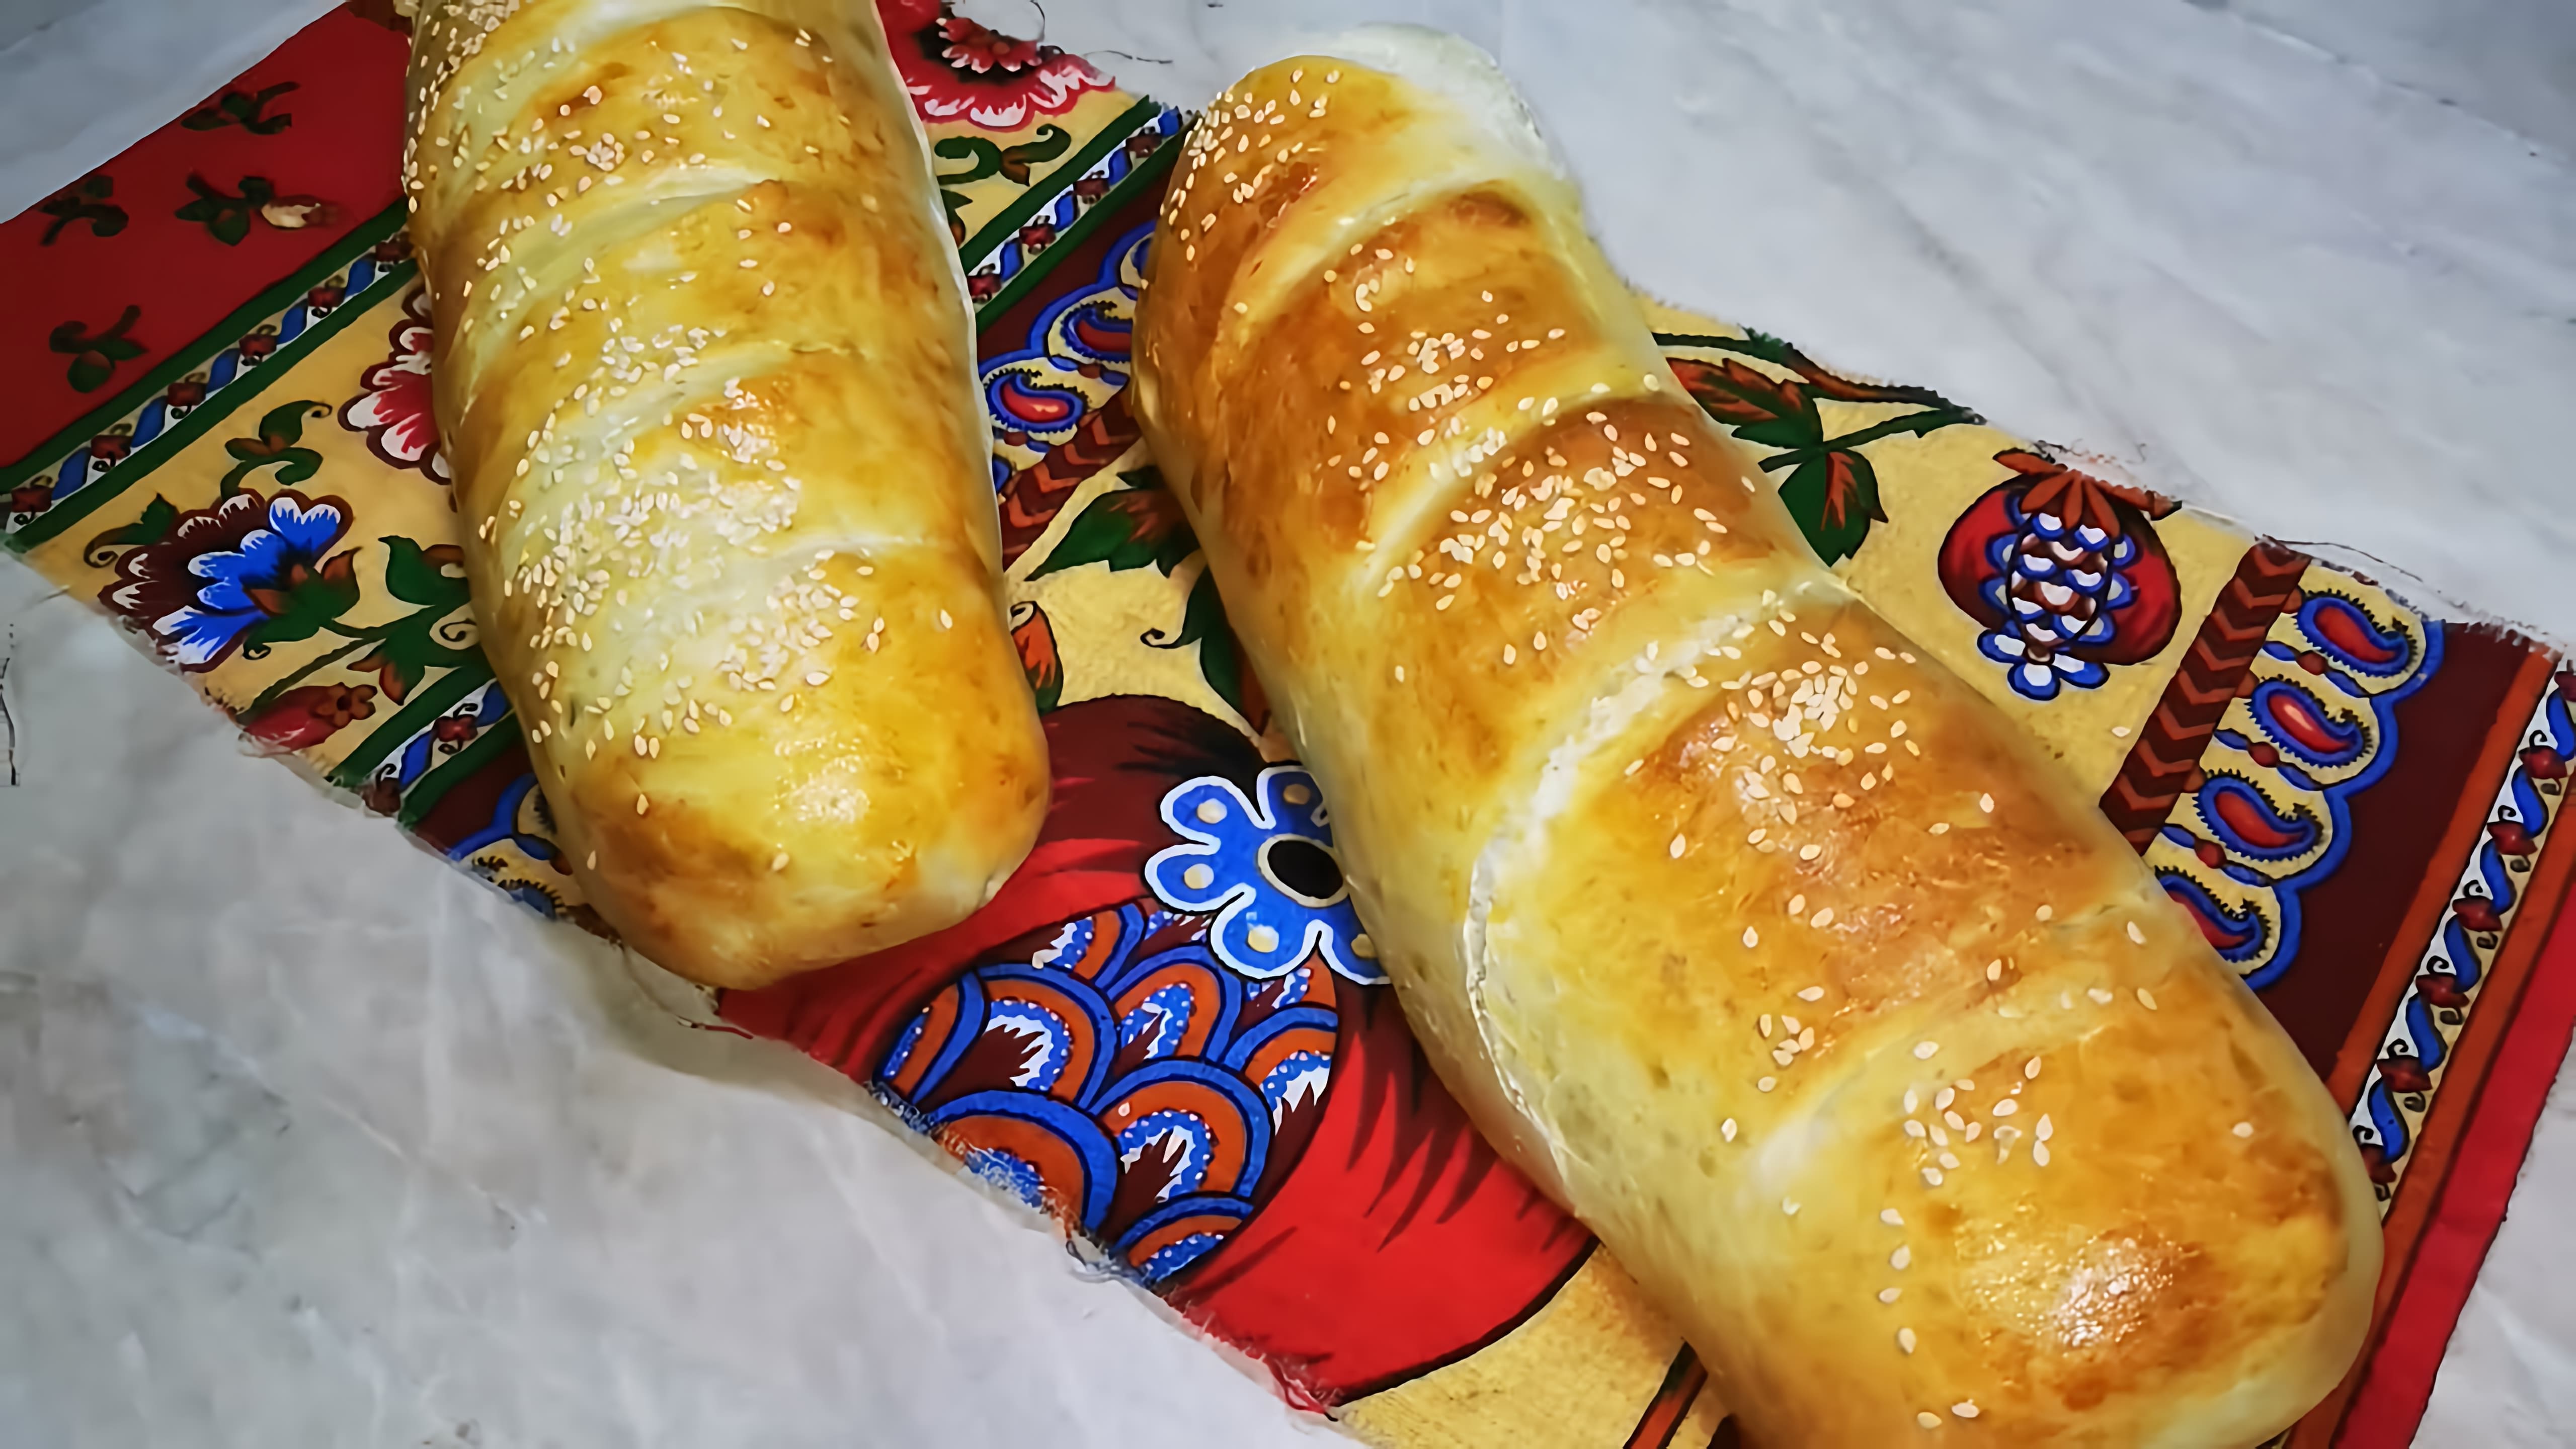 Хлеб на майонезе - проверенный рецепт 😋

В этом видео-ролике вы увидите, как приготовить вкусный и оригинальный хлеб на майонезе